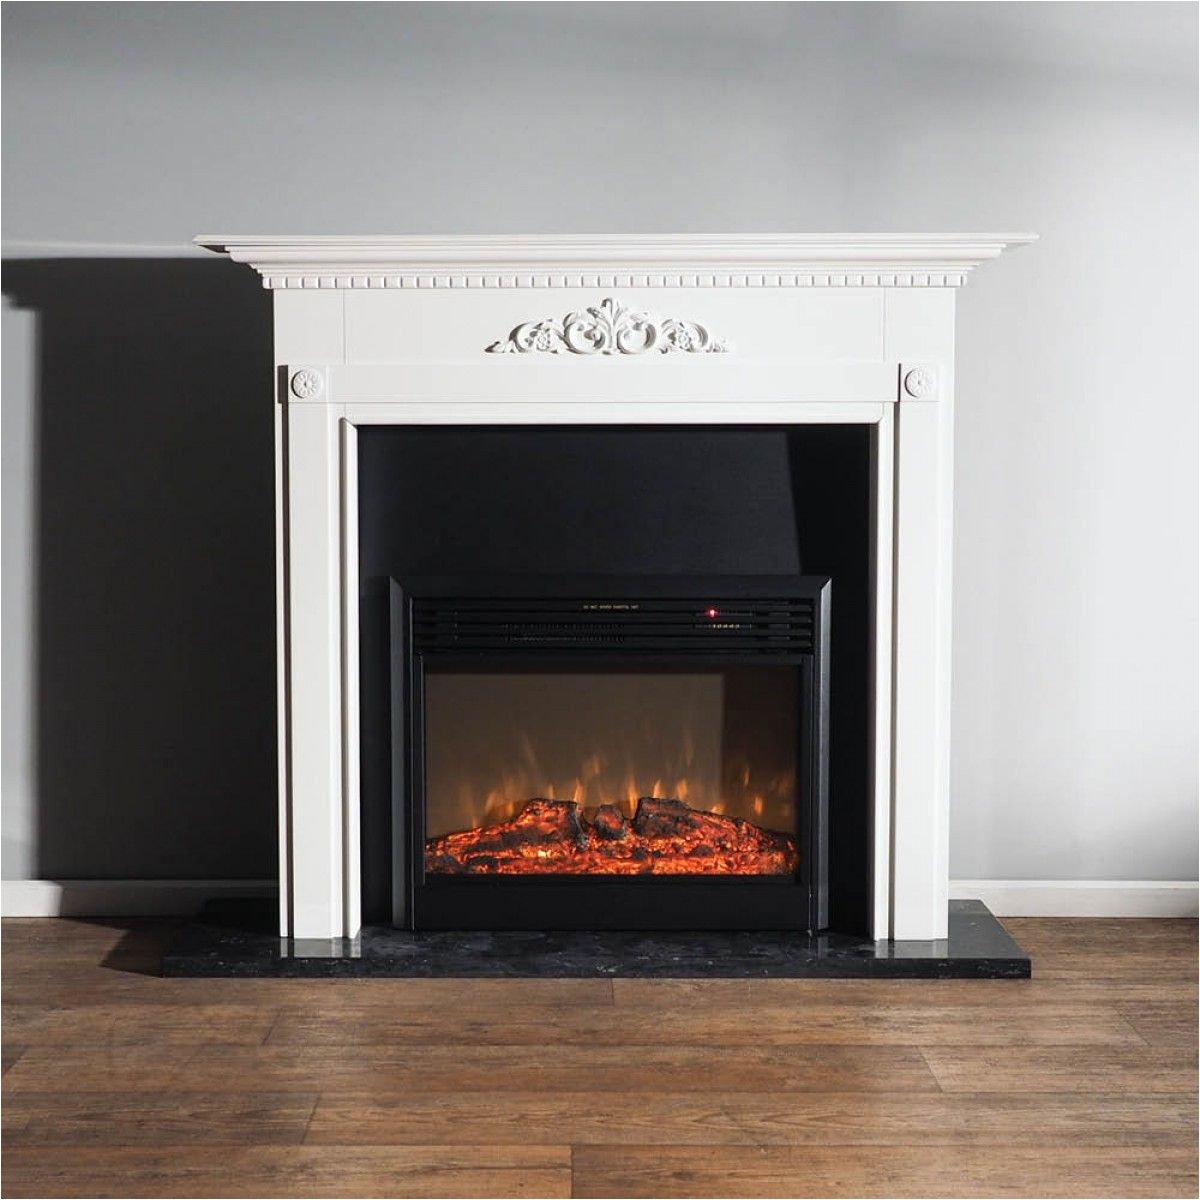 Heat Surge Fireplace Luxury White Mantel Gas Fireplace